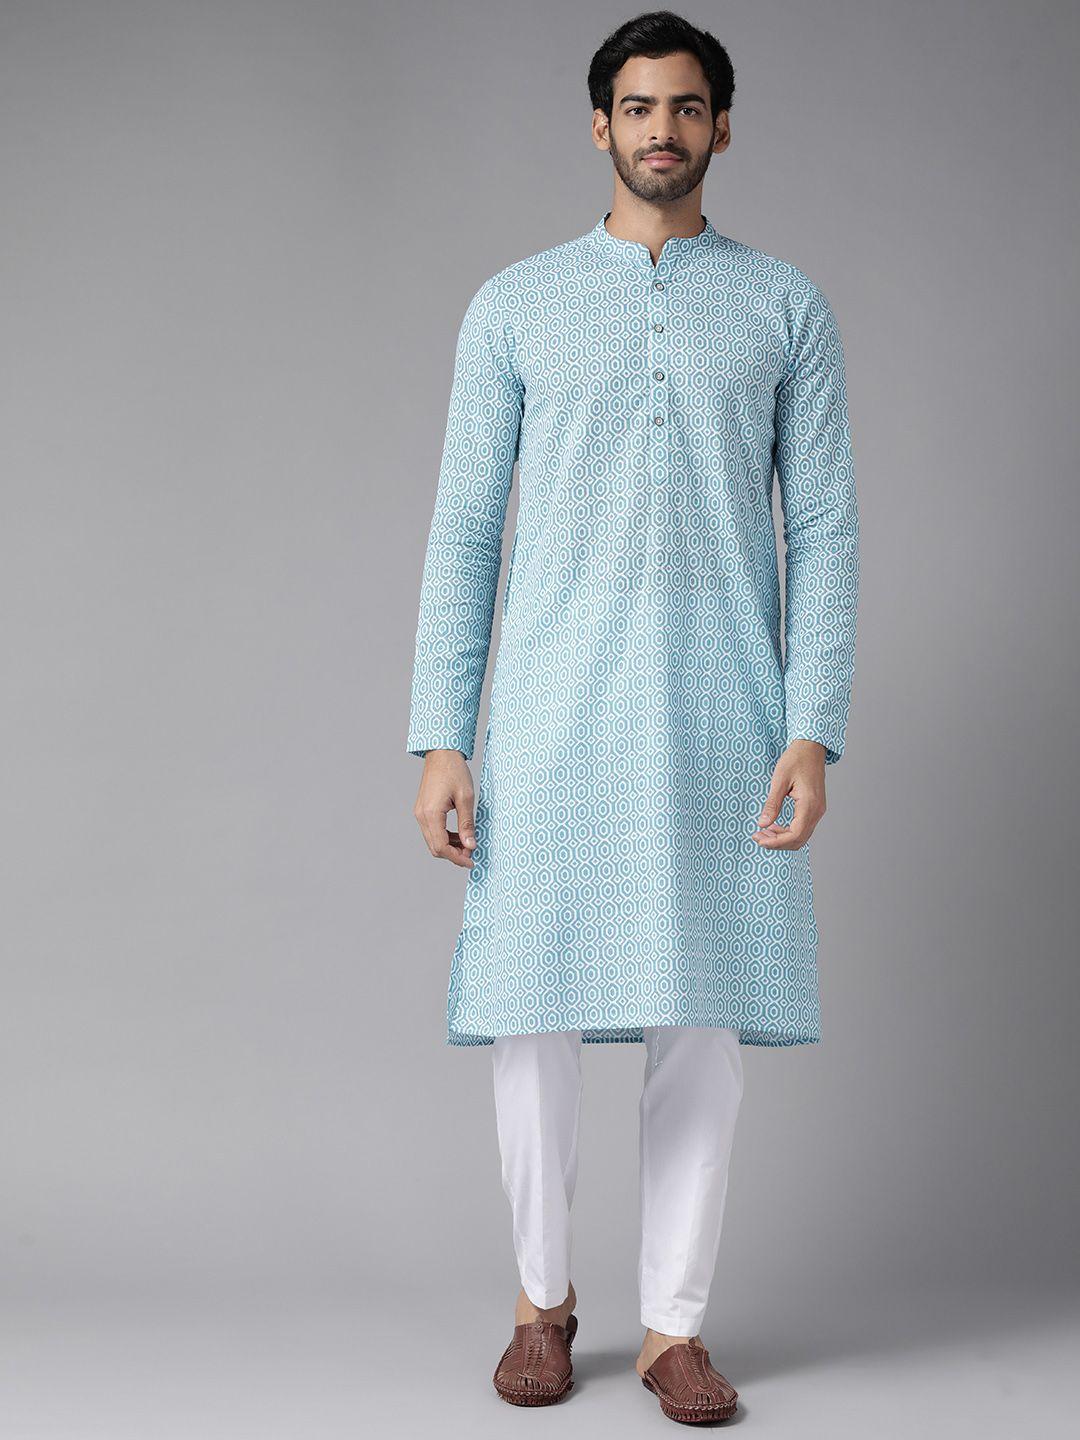 see-designs-men-blue-printed-pure-cotton-kurta-with-pyjamas